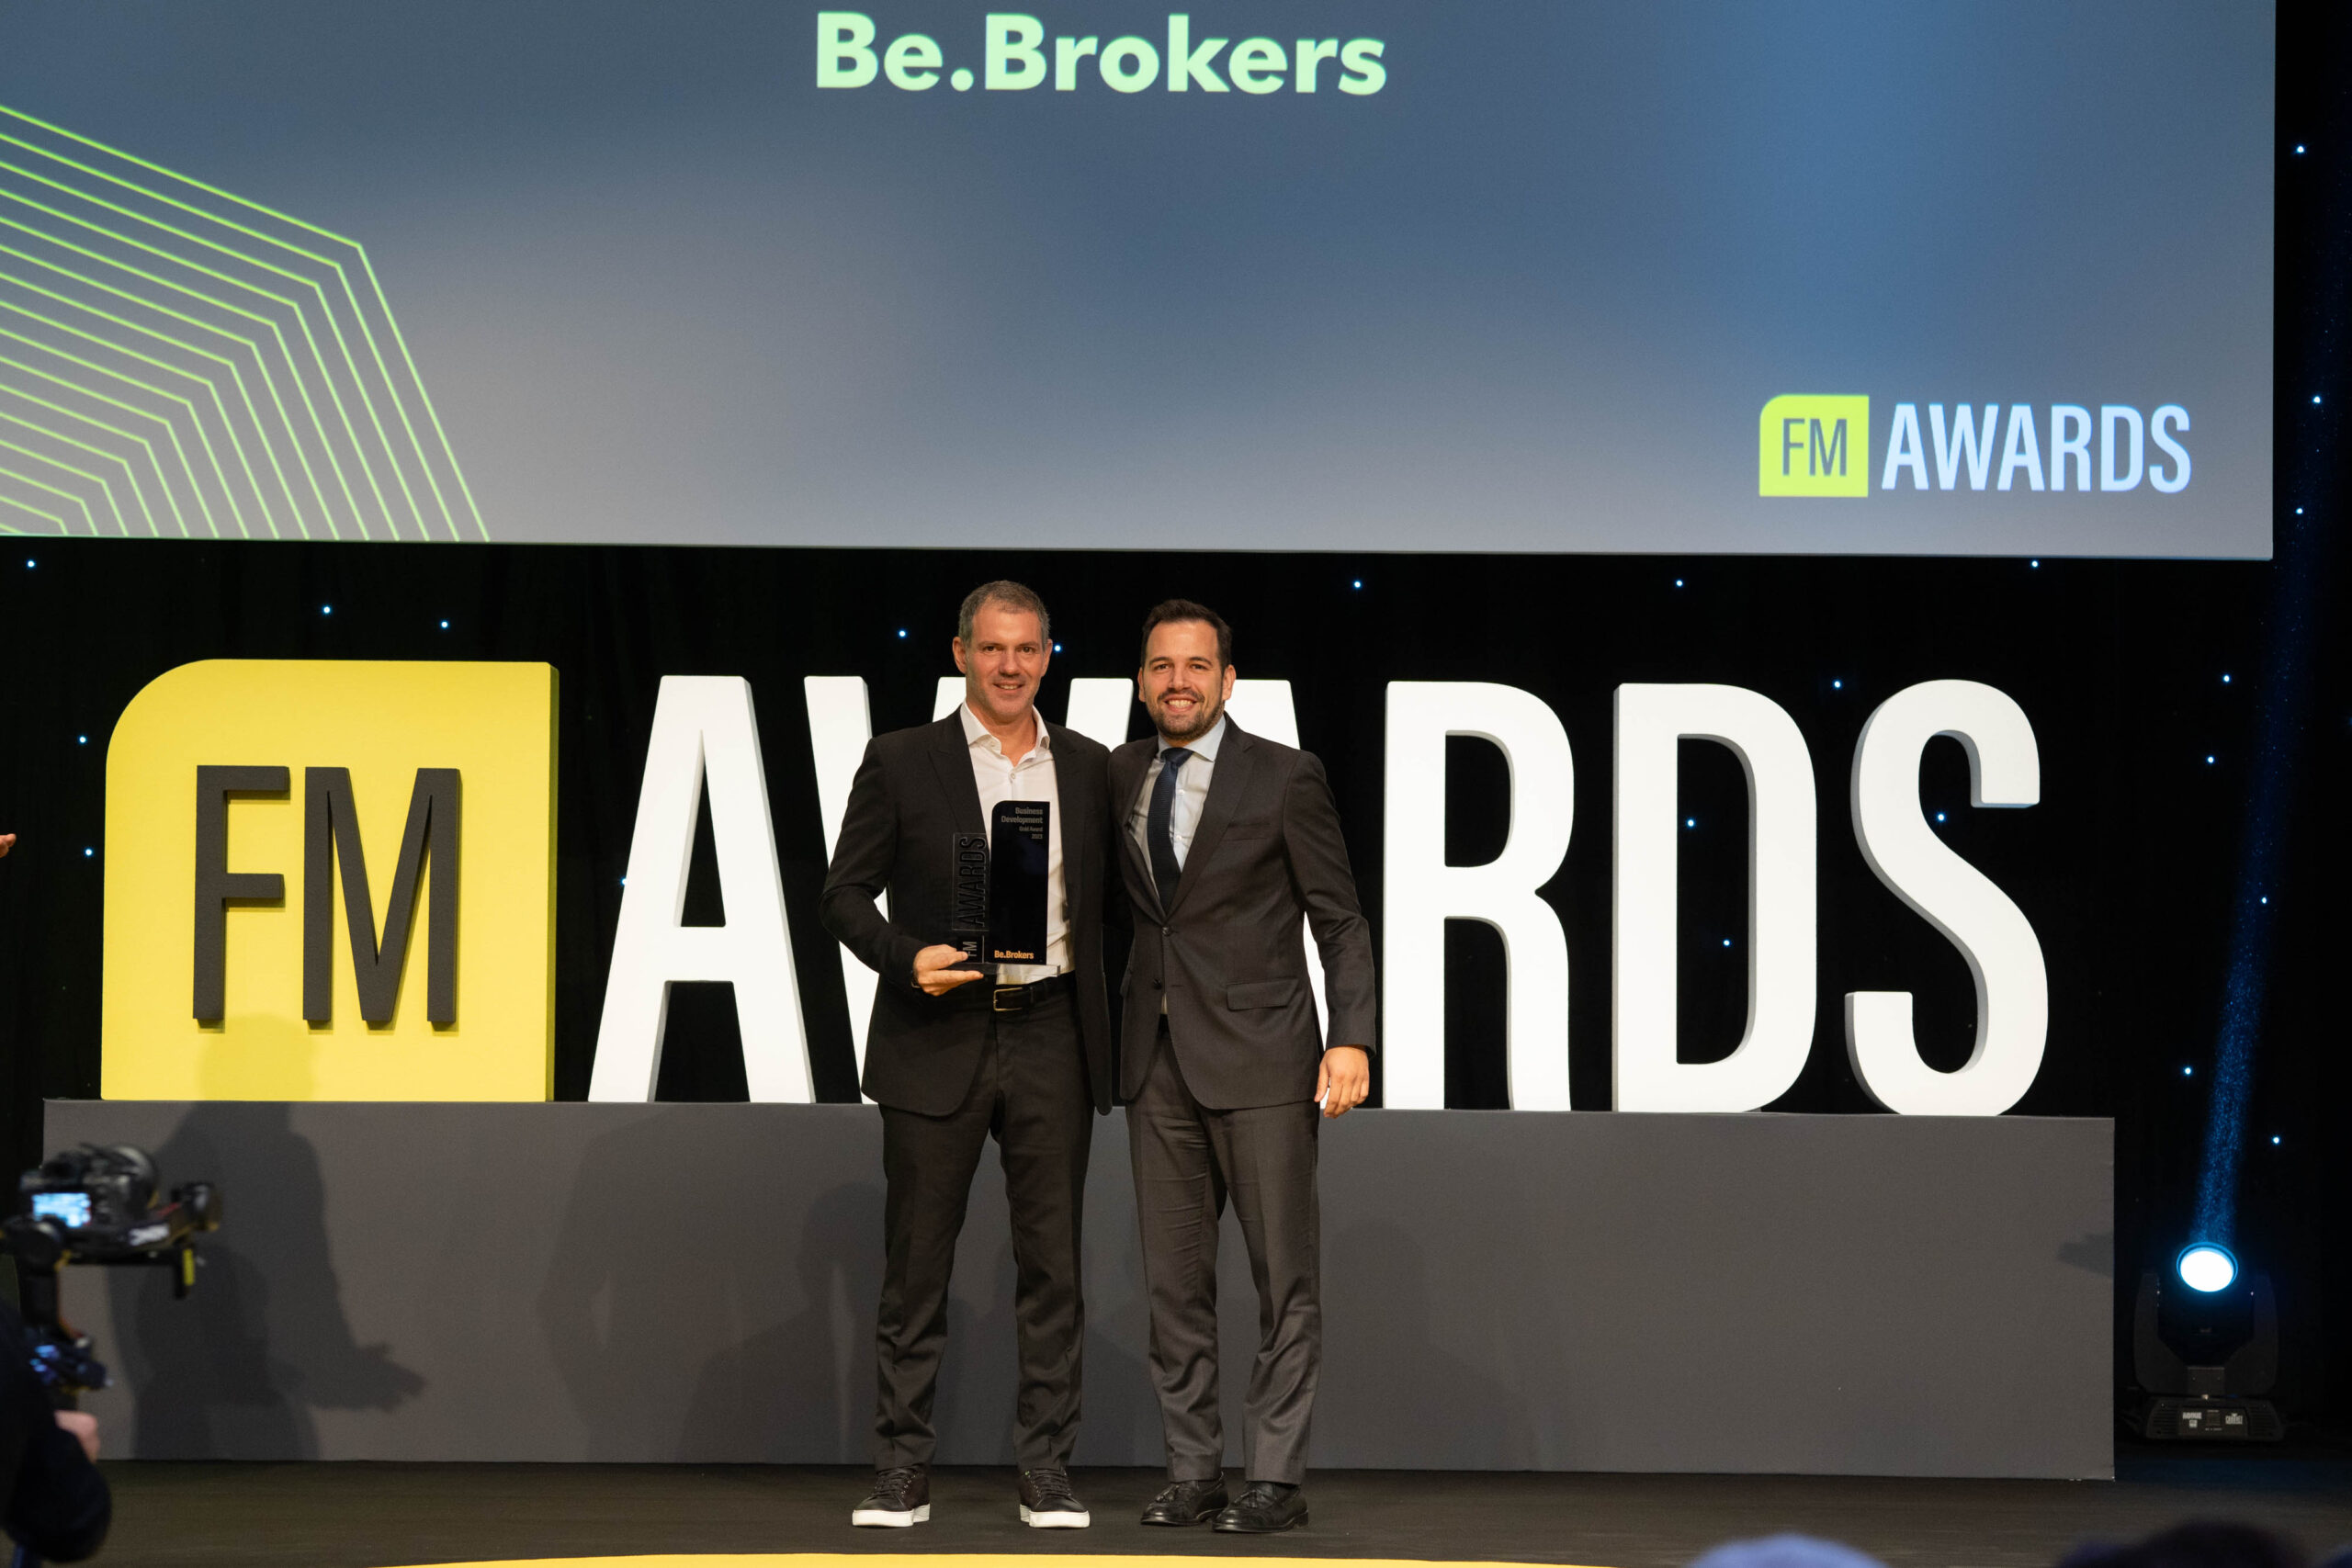 FMIA 2023: Η Be.Brokers νικήτρια στην κατηγορία “Business Development” μεταξύ των πρακτοριακών και μεσιτικών εταιρειών